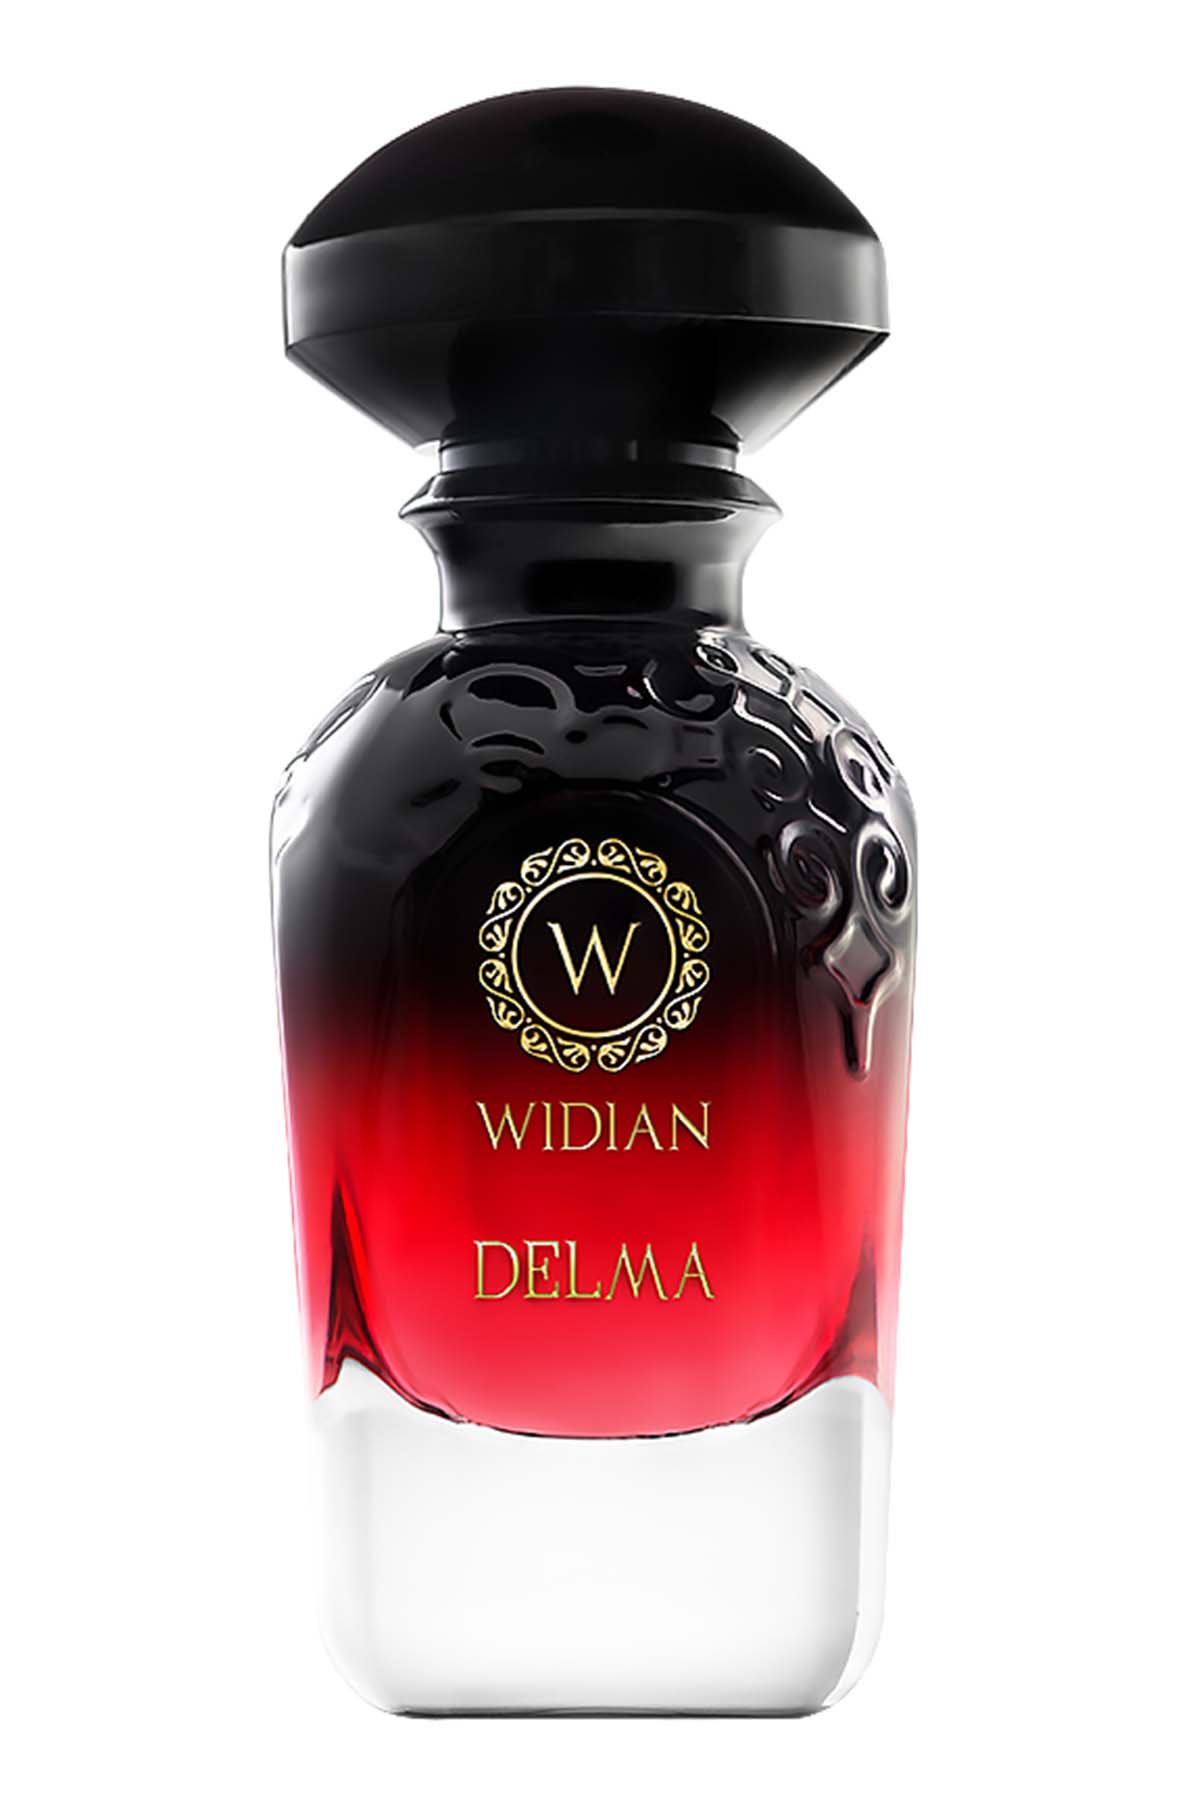 Widian Delma Extrait de Parfum